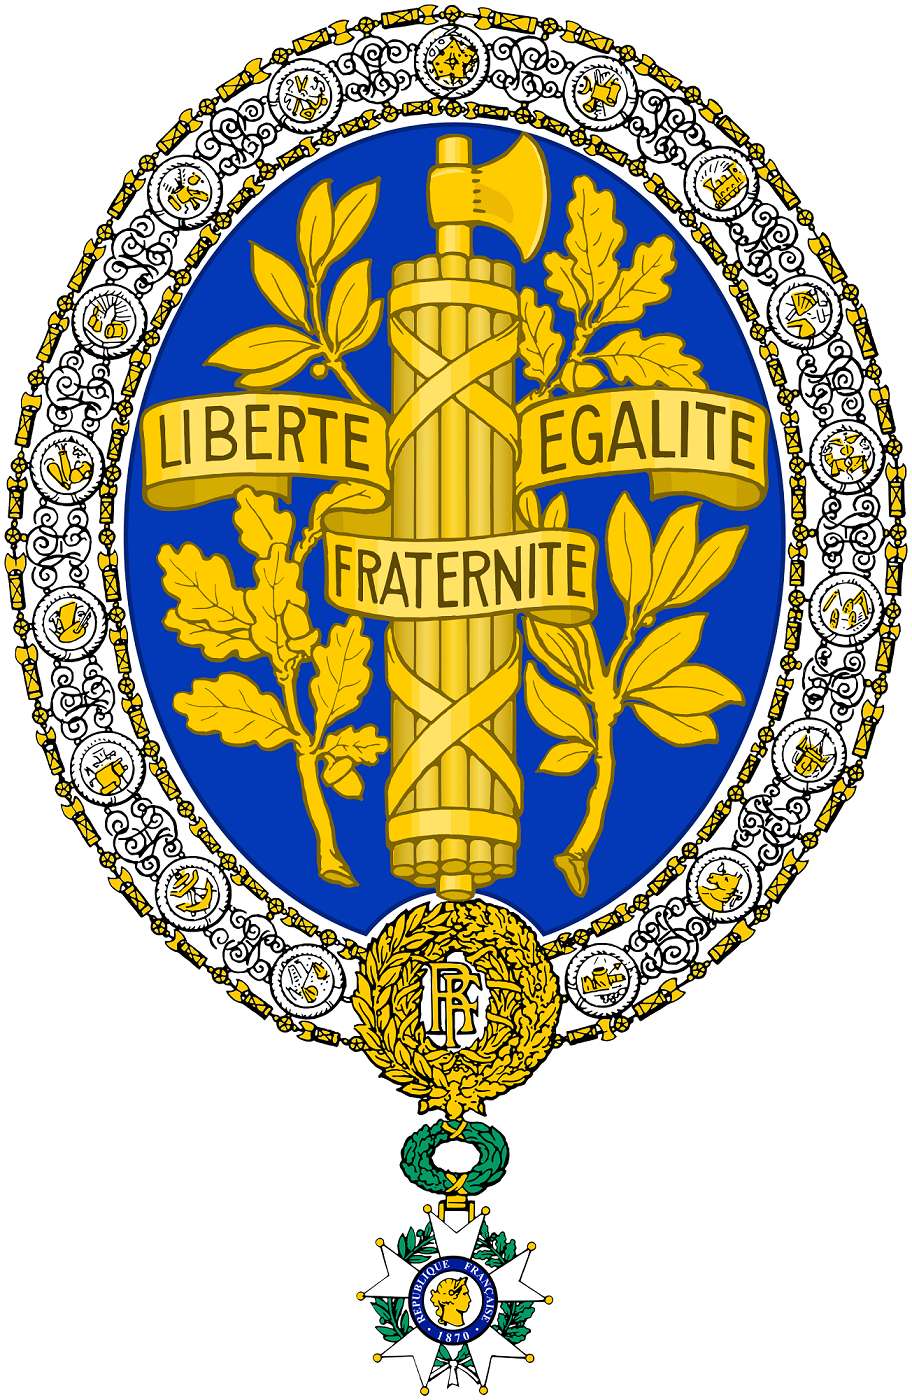 Armes de la République française, créées sous la IIIe République, à noter cette présence très importante du bleu. © Wikimedia Commons, domaine public.